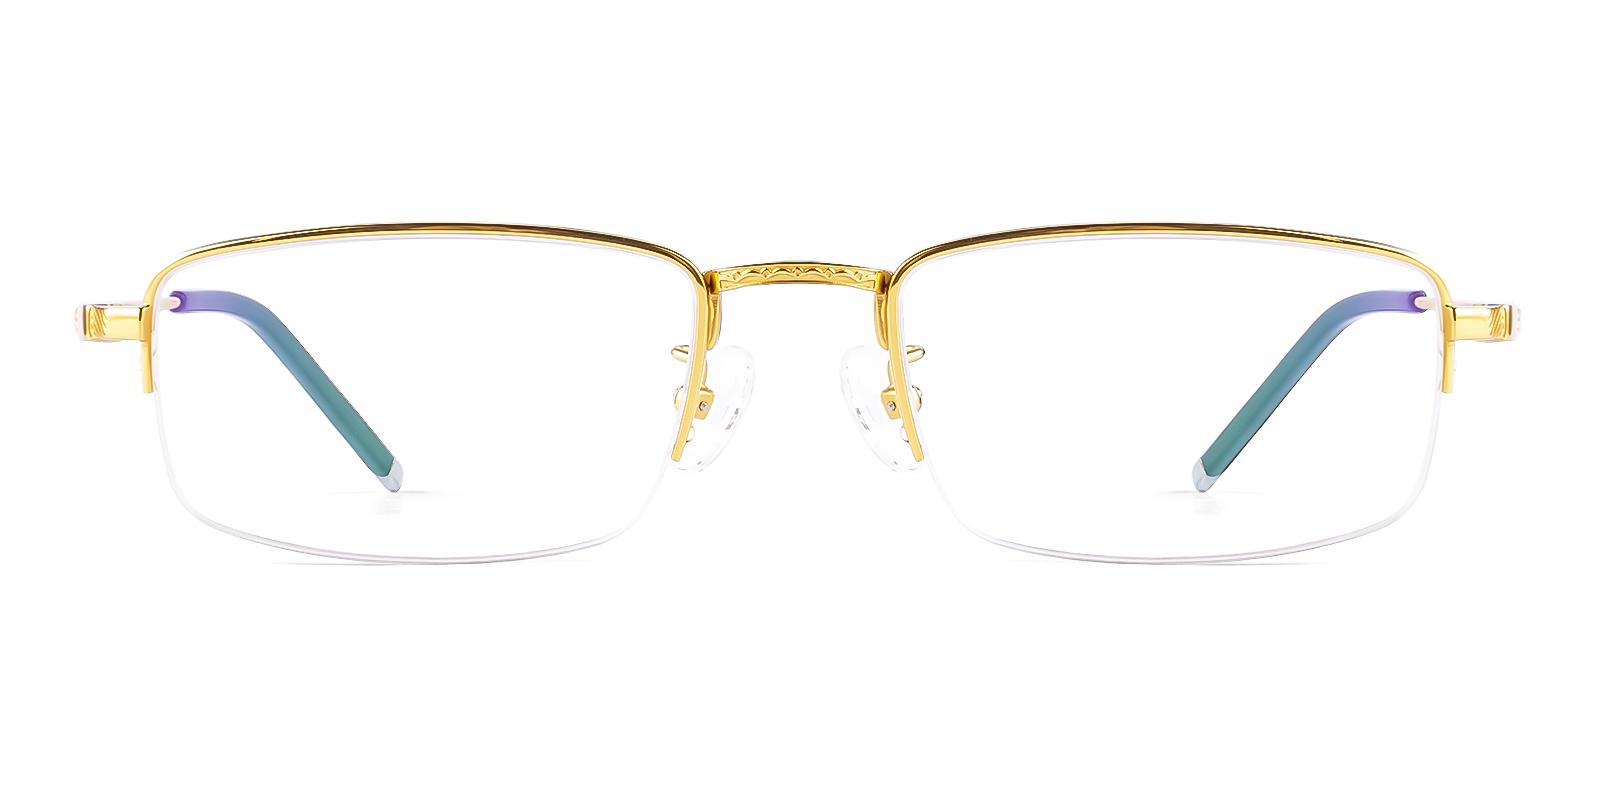 Alternier Gold Titanium Eyeglasses , NosePads Frames from ABBE Glasses